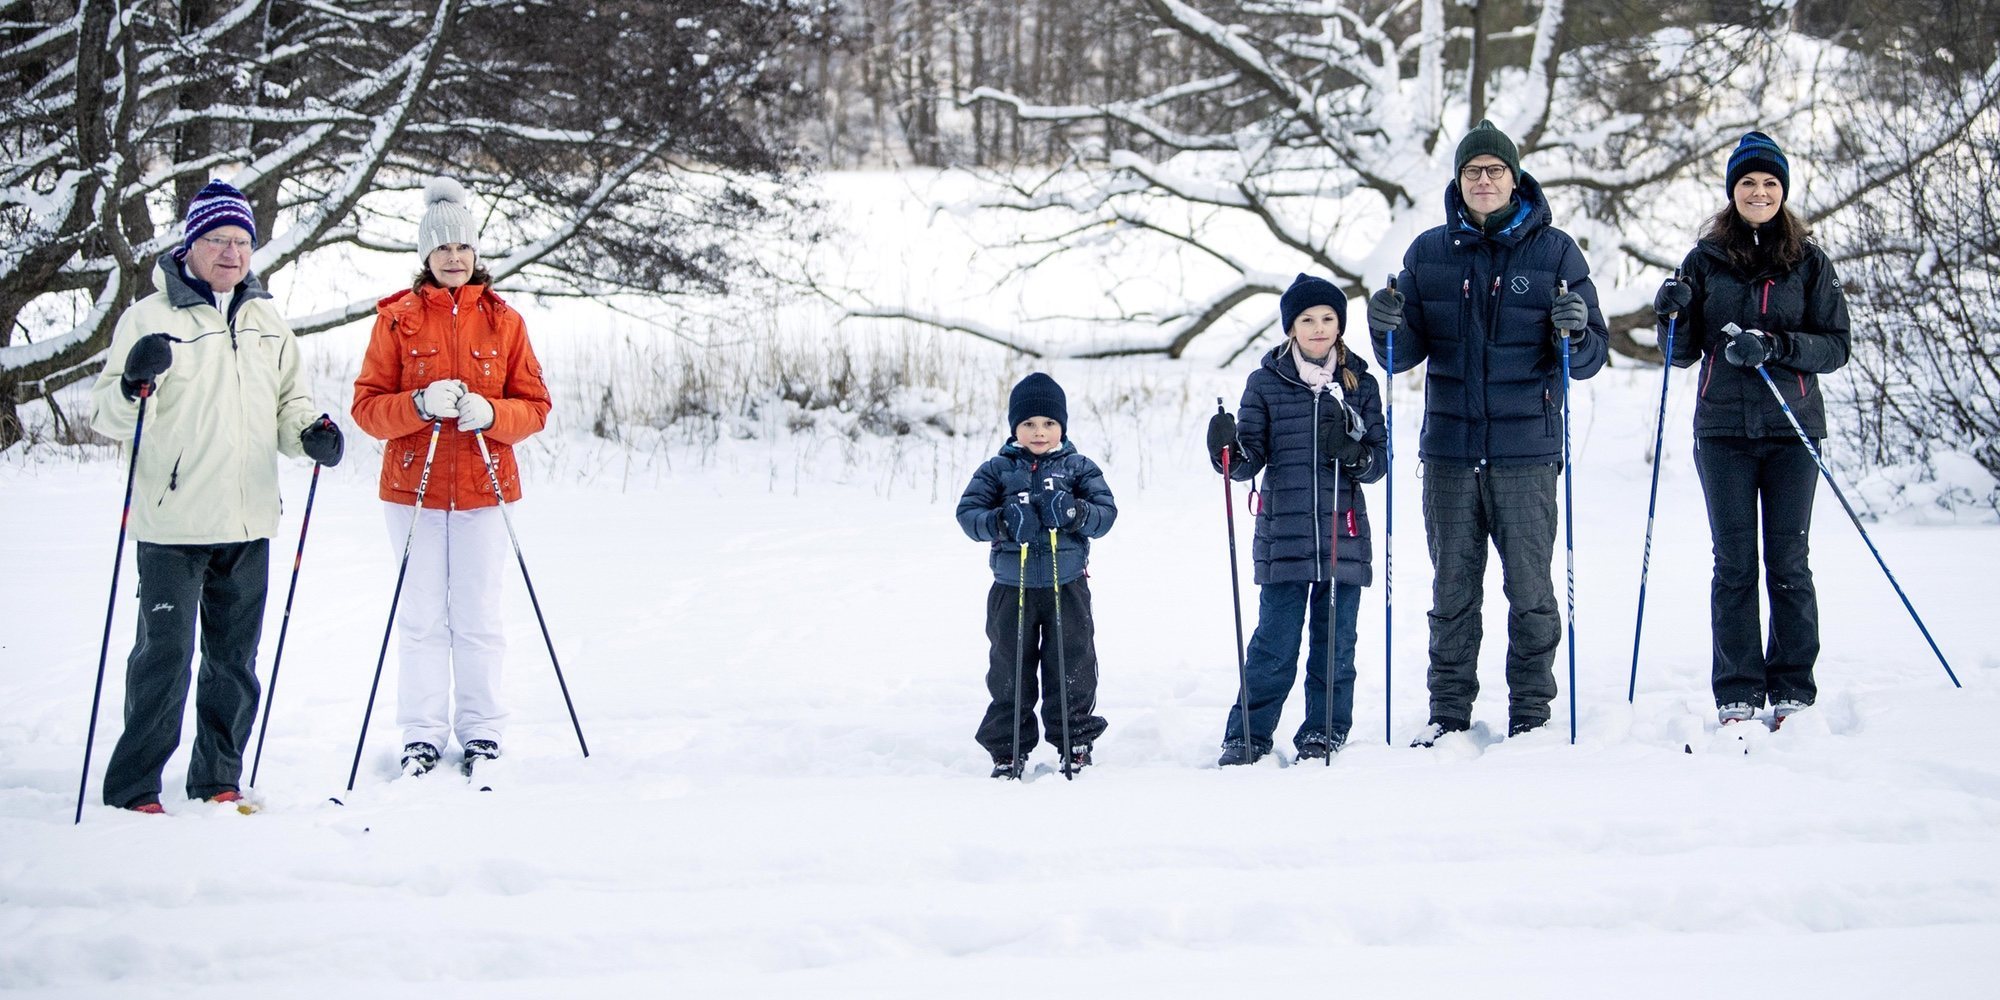 El día en la nieve de los Reyes Carlos Gustavo y Silvia y los Príncipes Victoria, Daniel, Estela y Oscar de Suecia